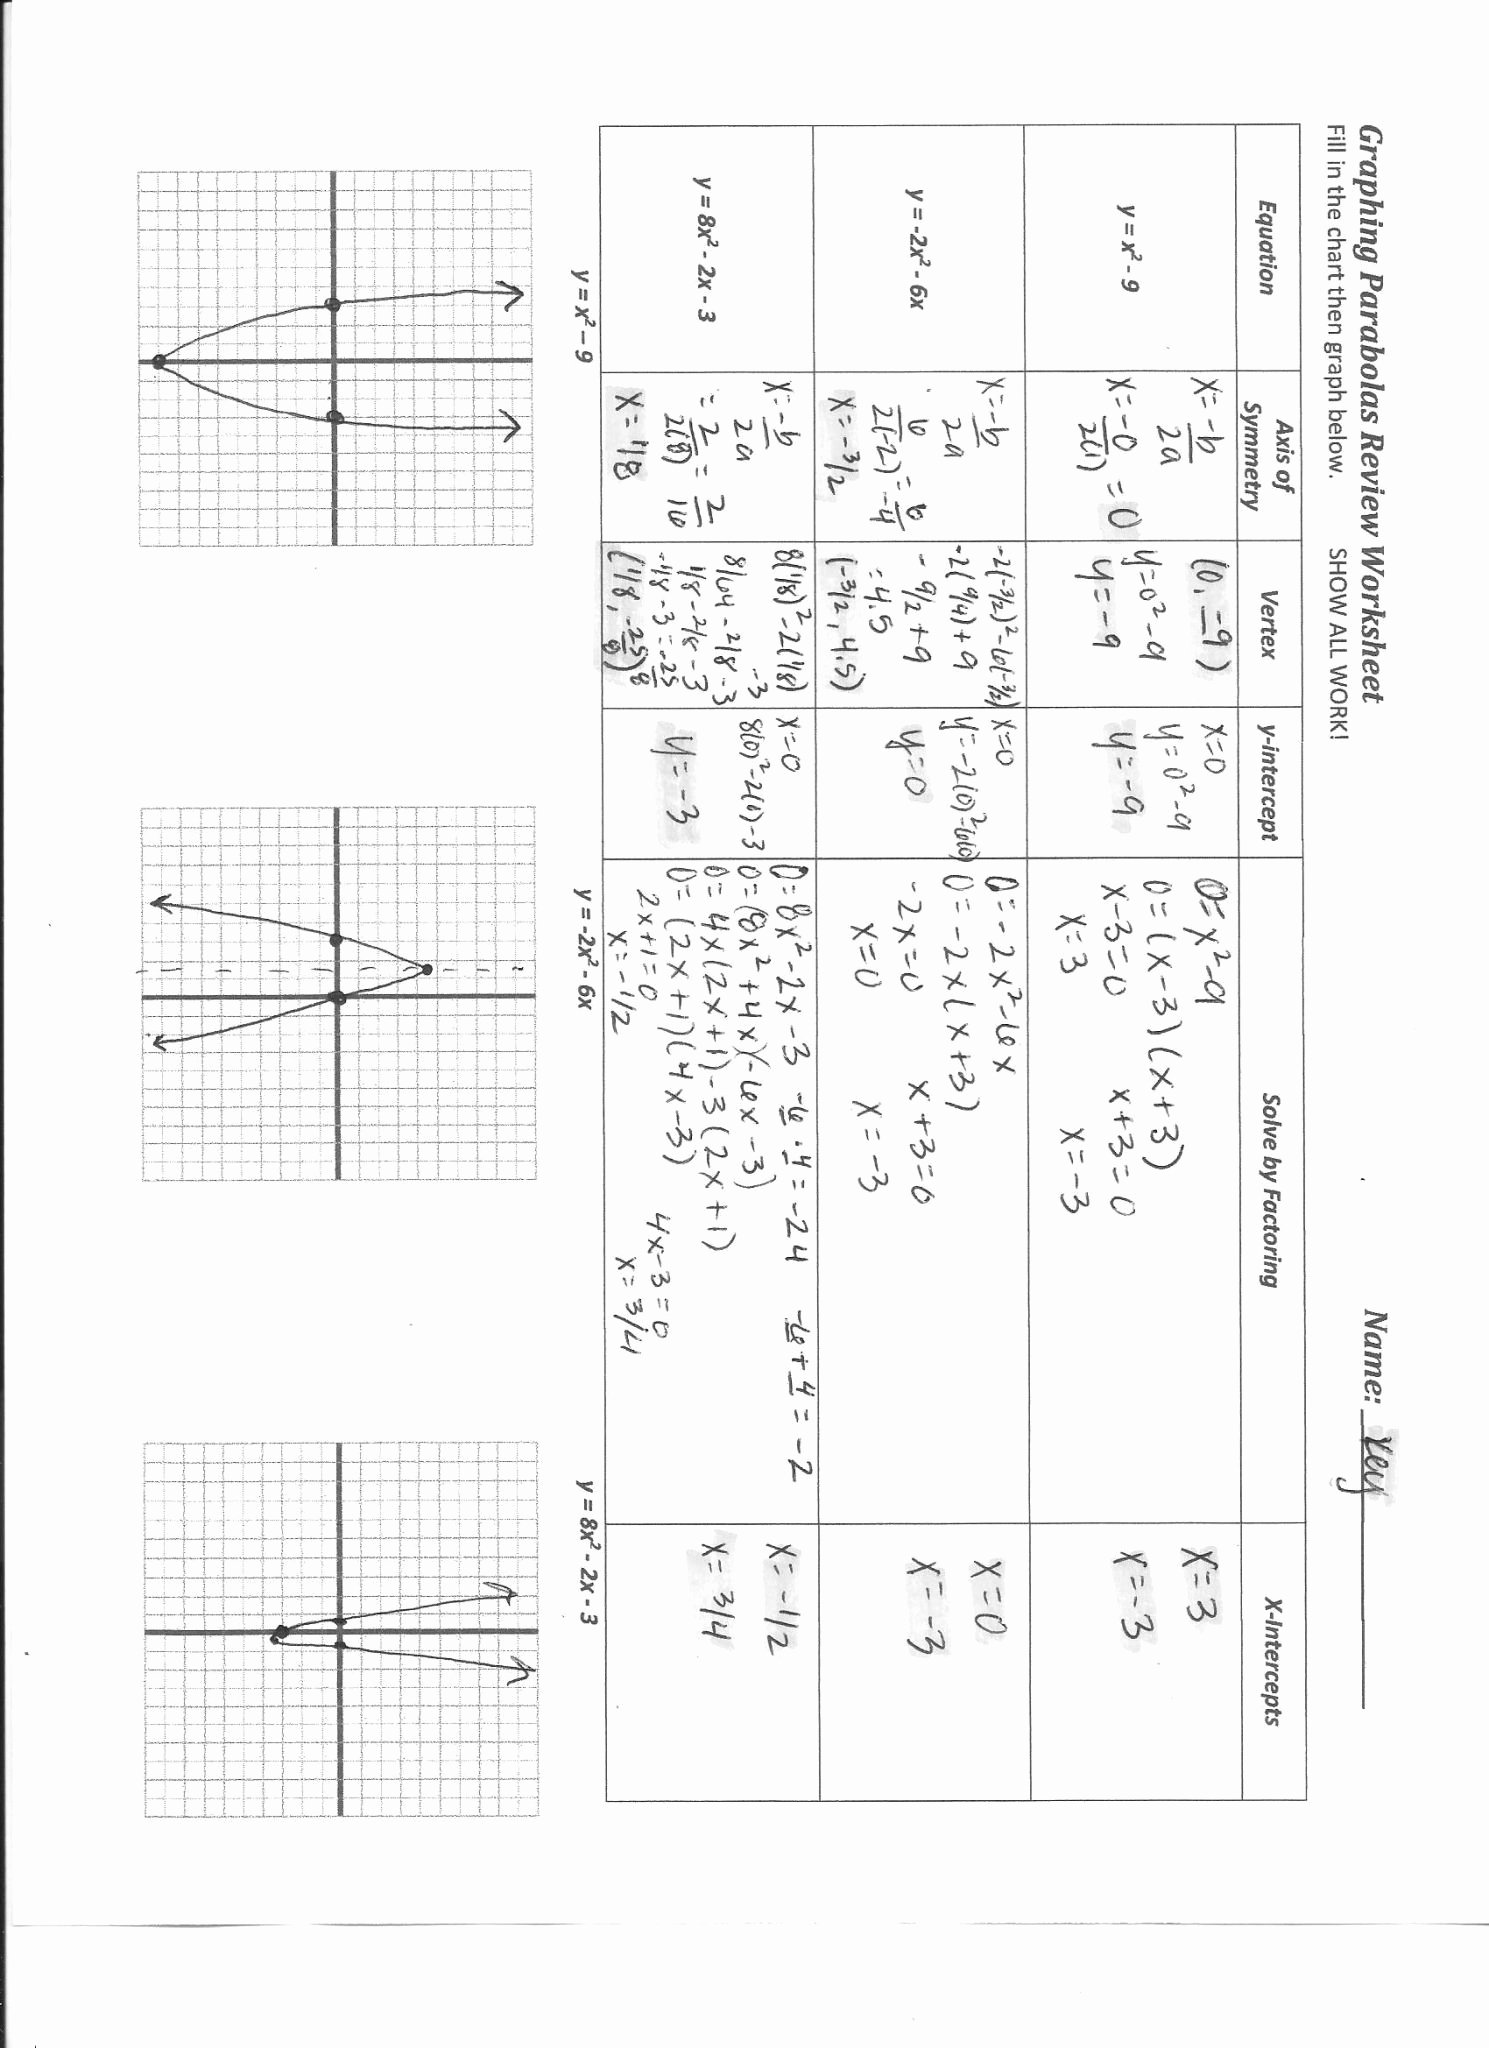 Characteristics Of Quadratic Functions Worksheet Elegant Characteristics Quadratic Functions New Worksheet